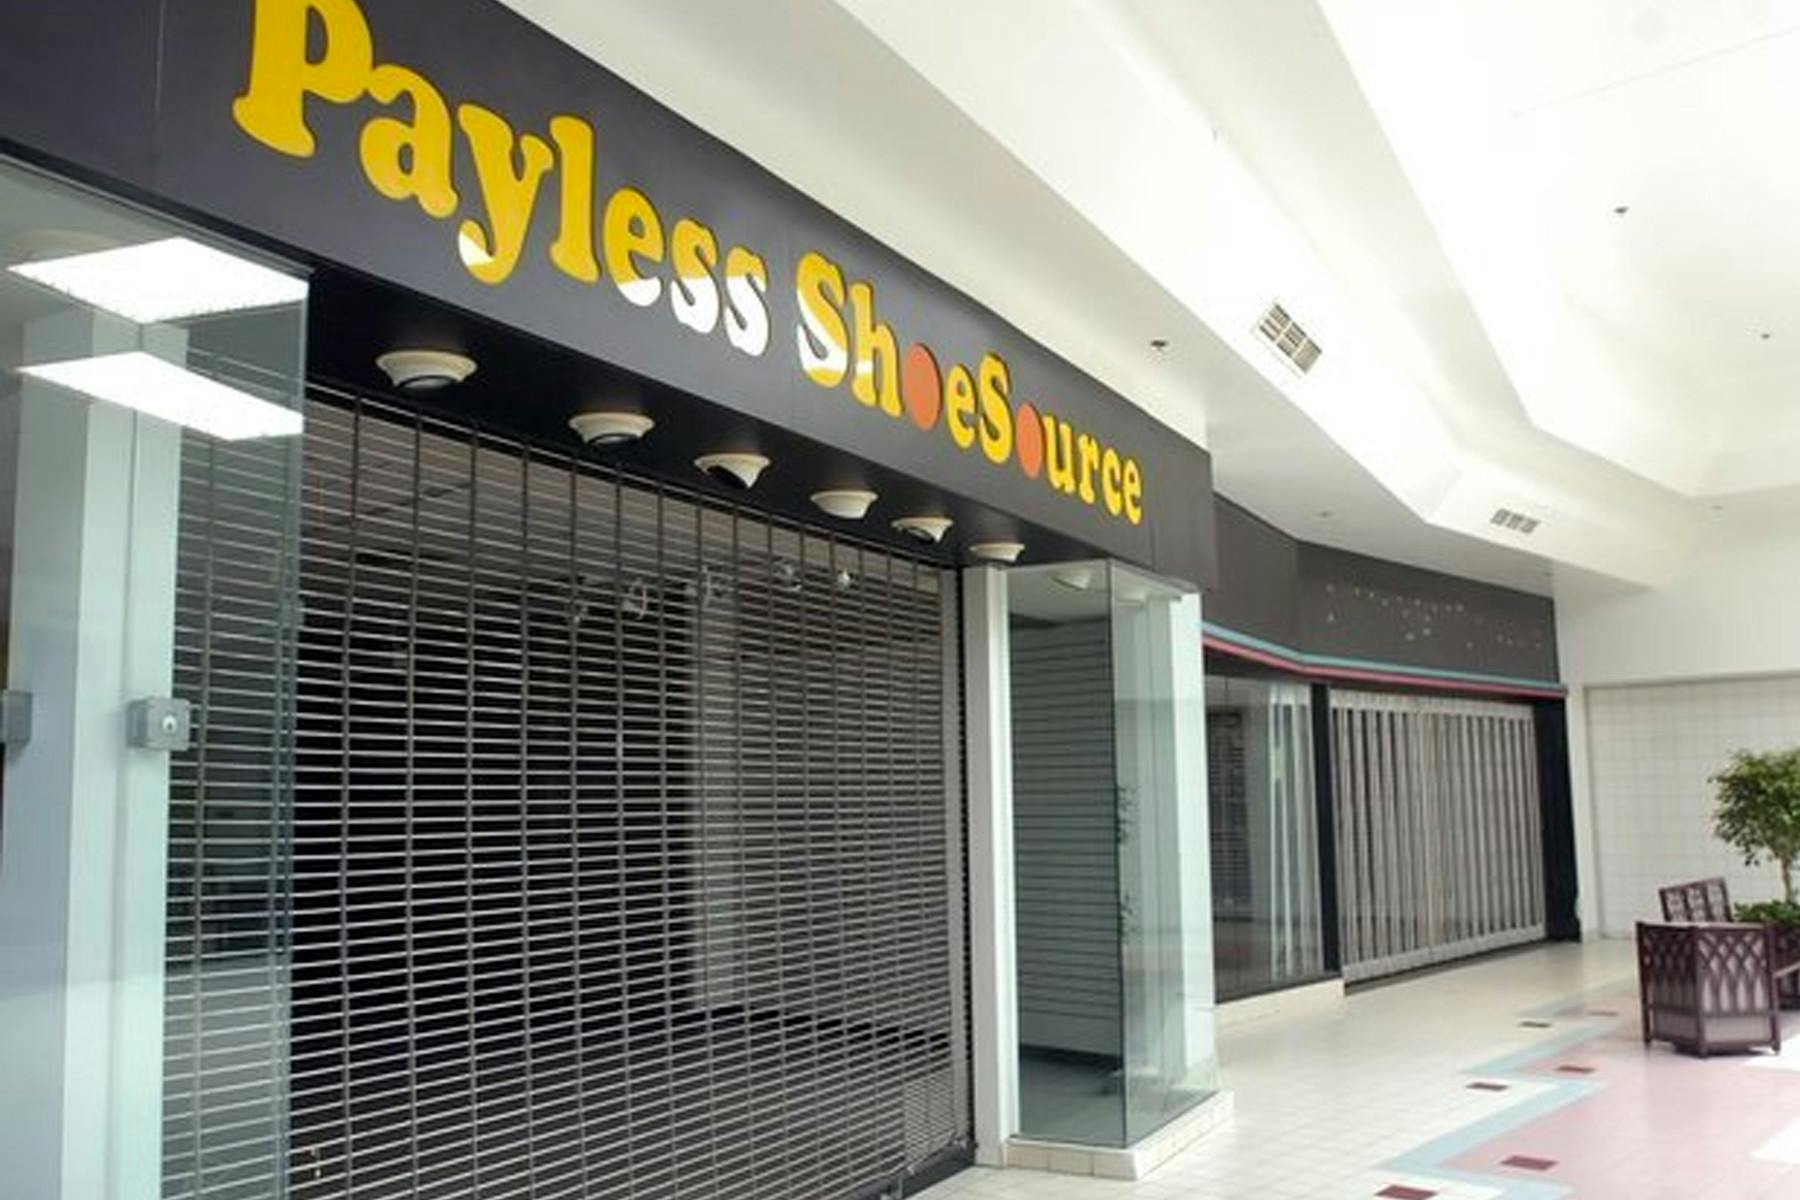 payless closing deals